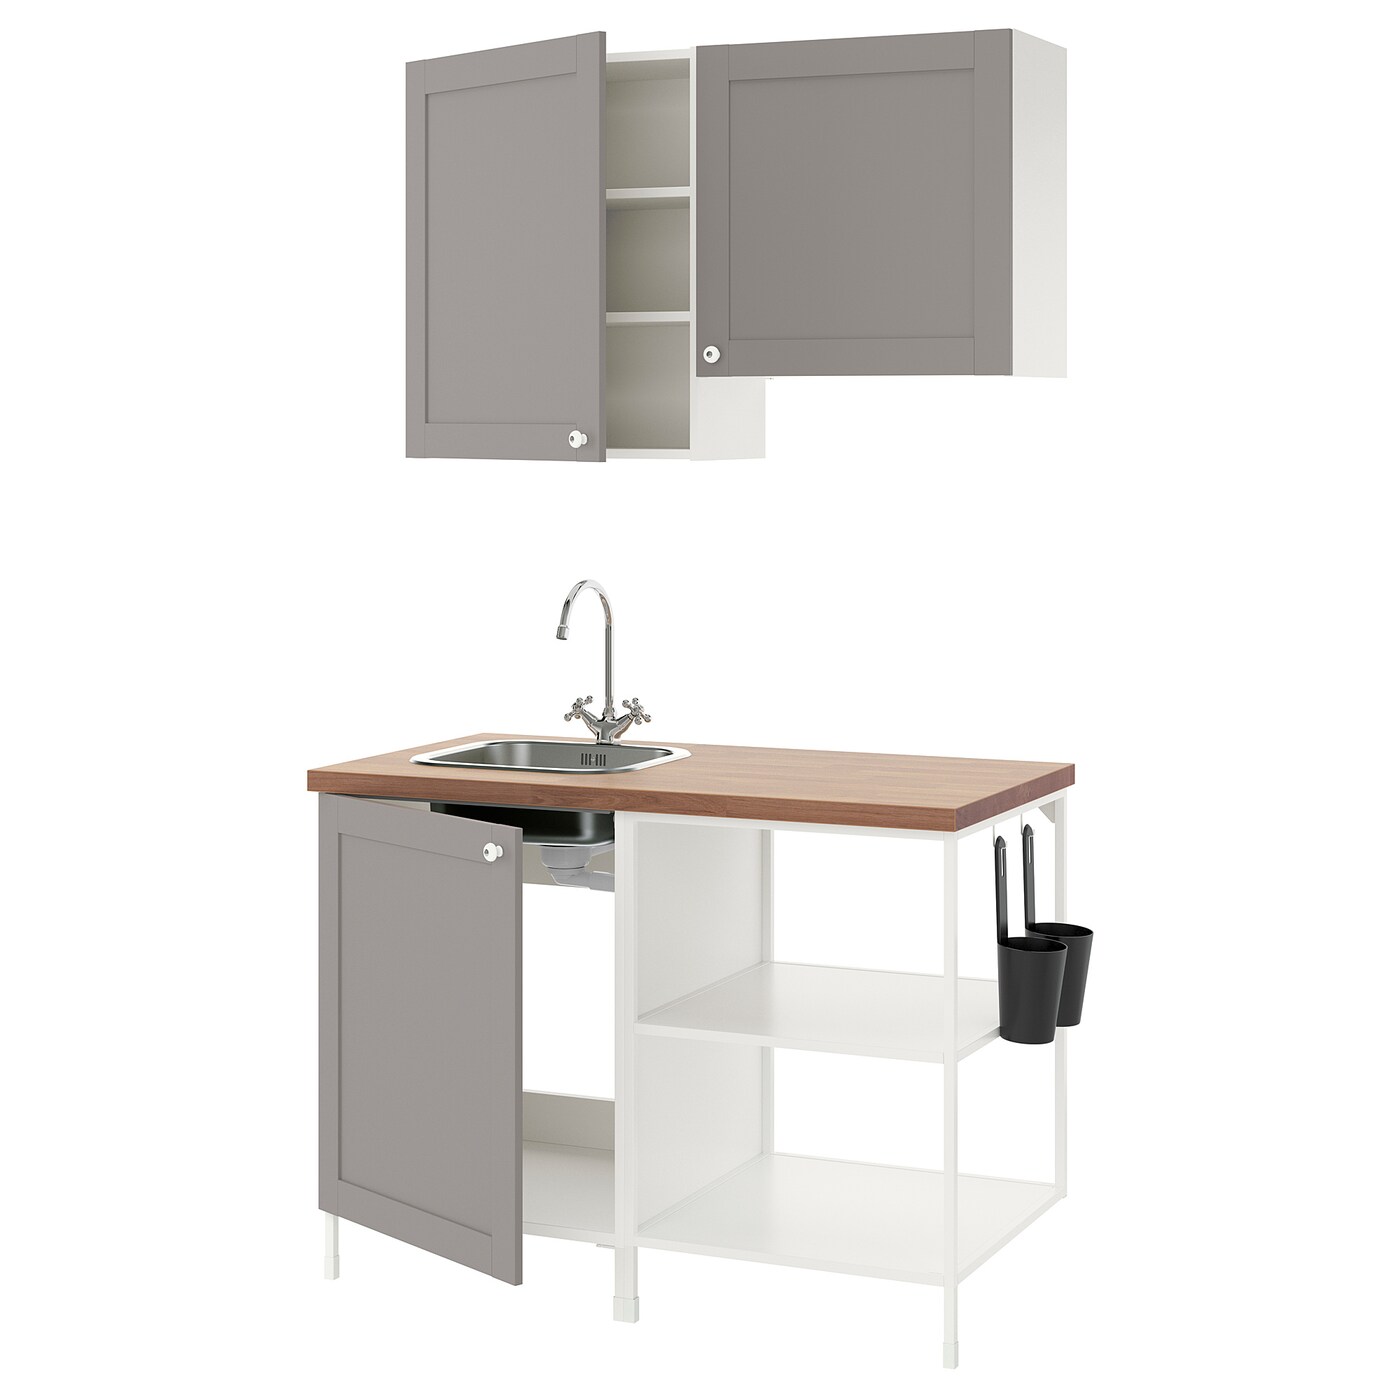 Комбинация для кухонного хранения  - ENHET  IKEA/ ЭНХЕТ ИКЕА, 123x63,5x222 см, белый/серый/бежевый